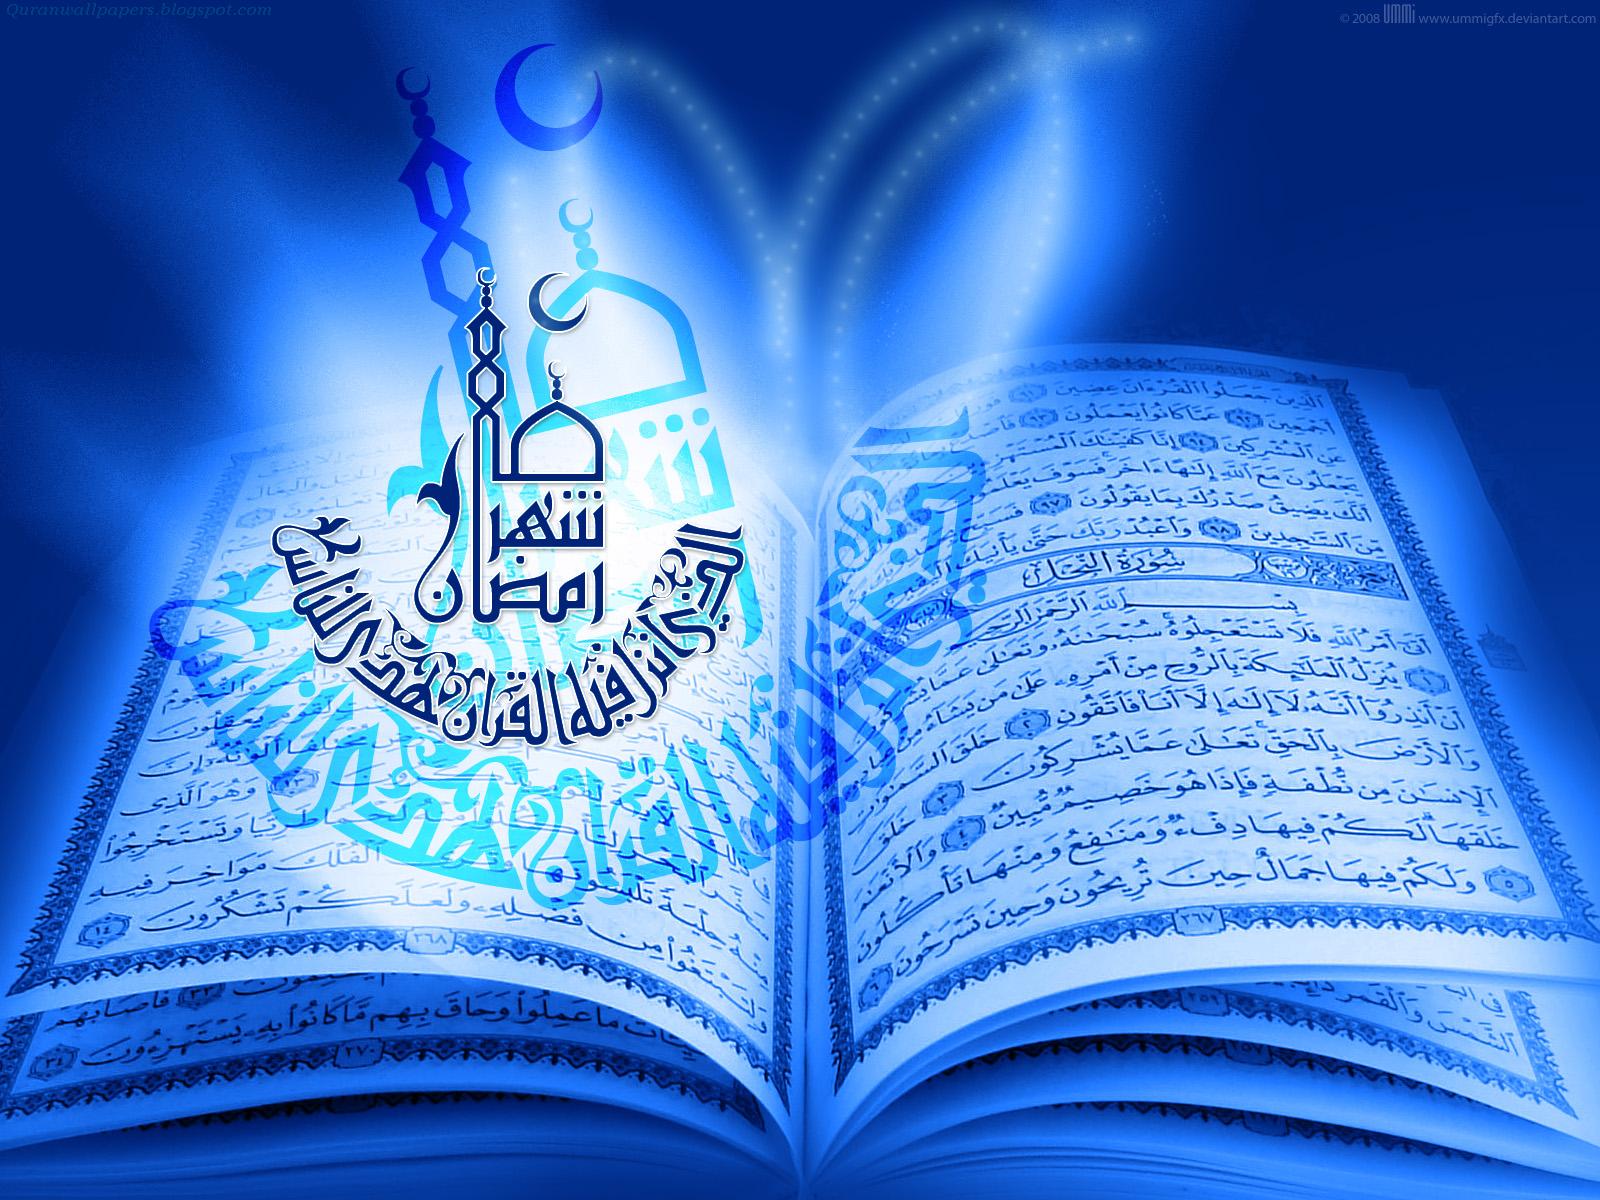 77+] Quran Wallpaper - WallpaperSafari